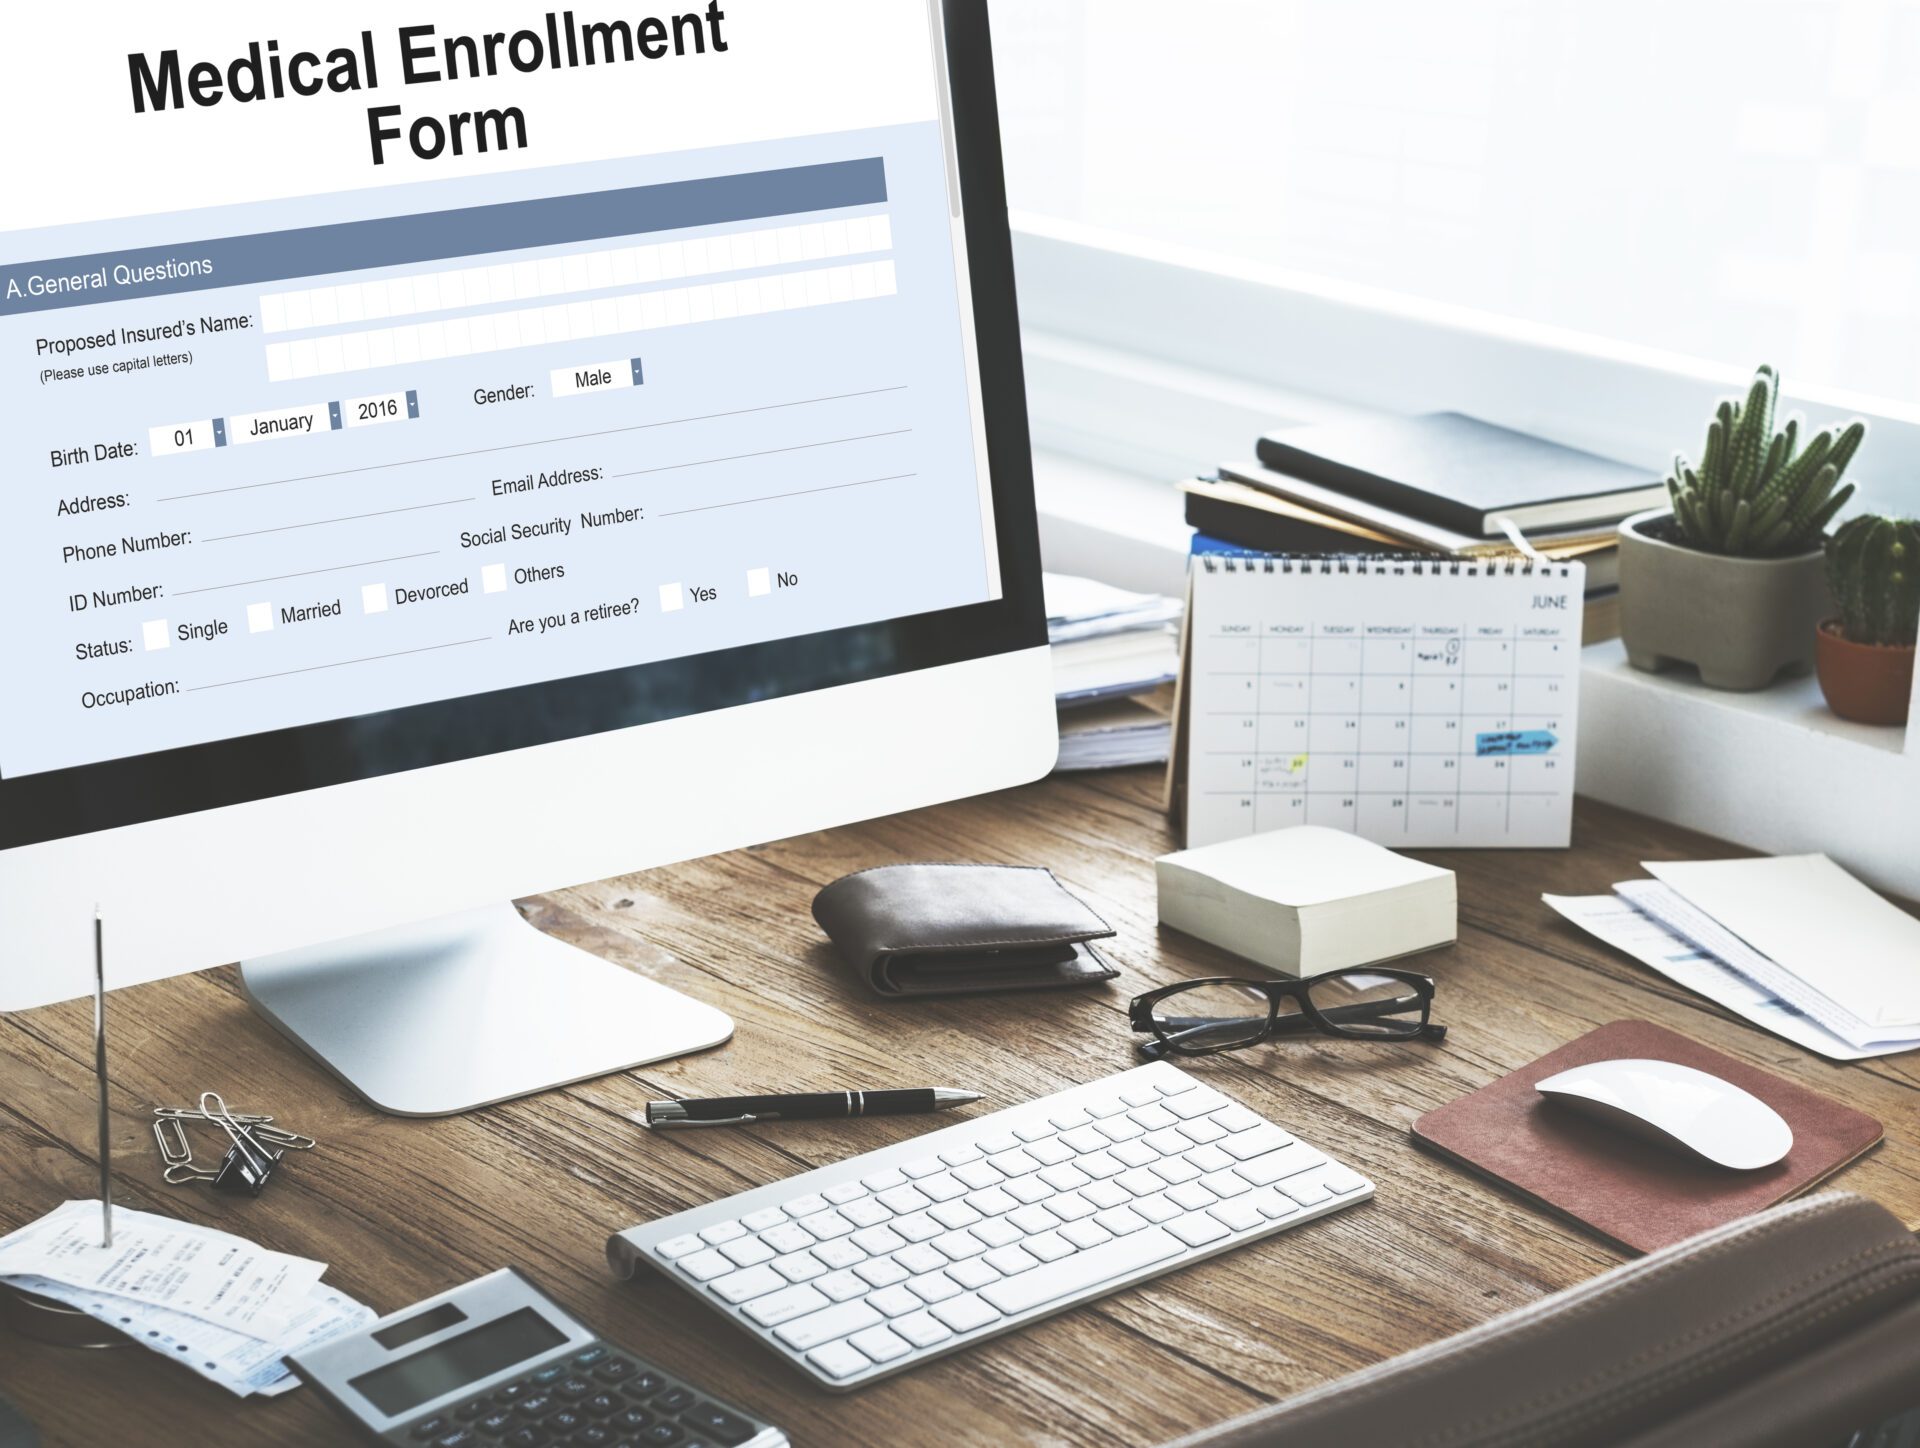 A medical enrollment form on a computer screen.